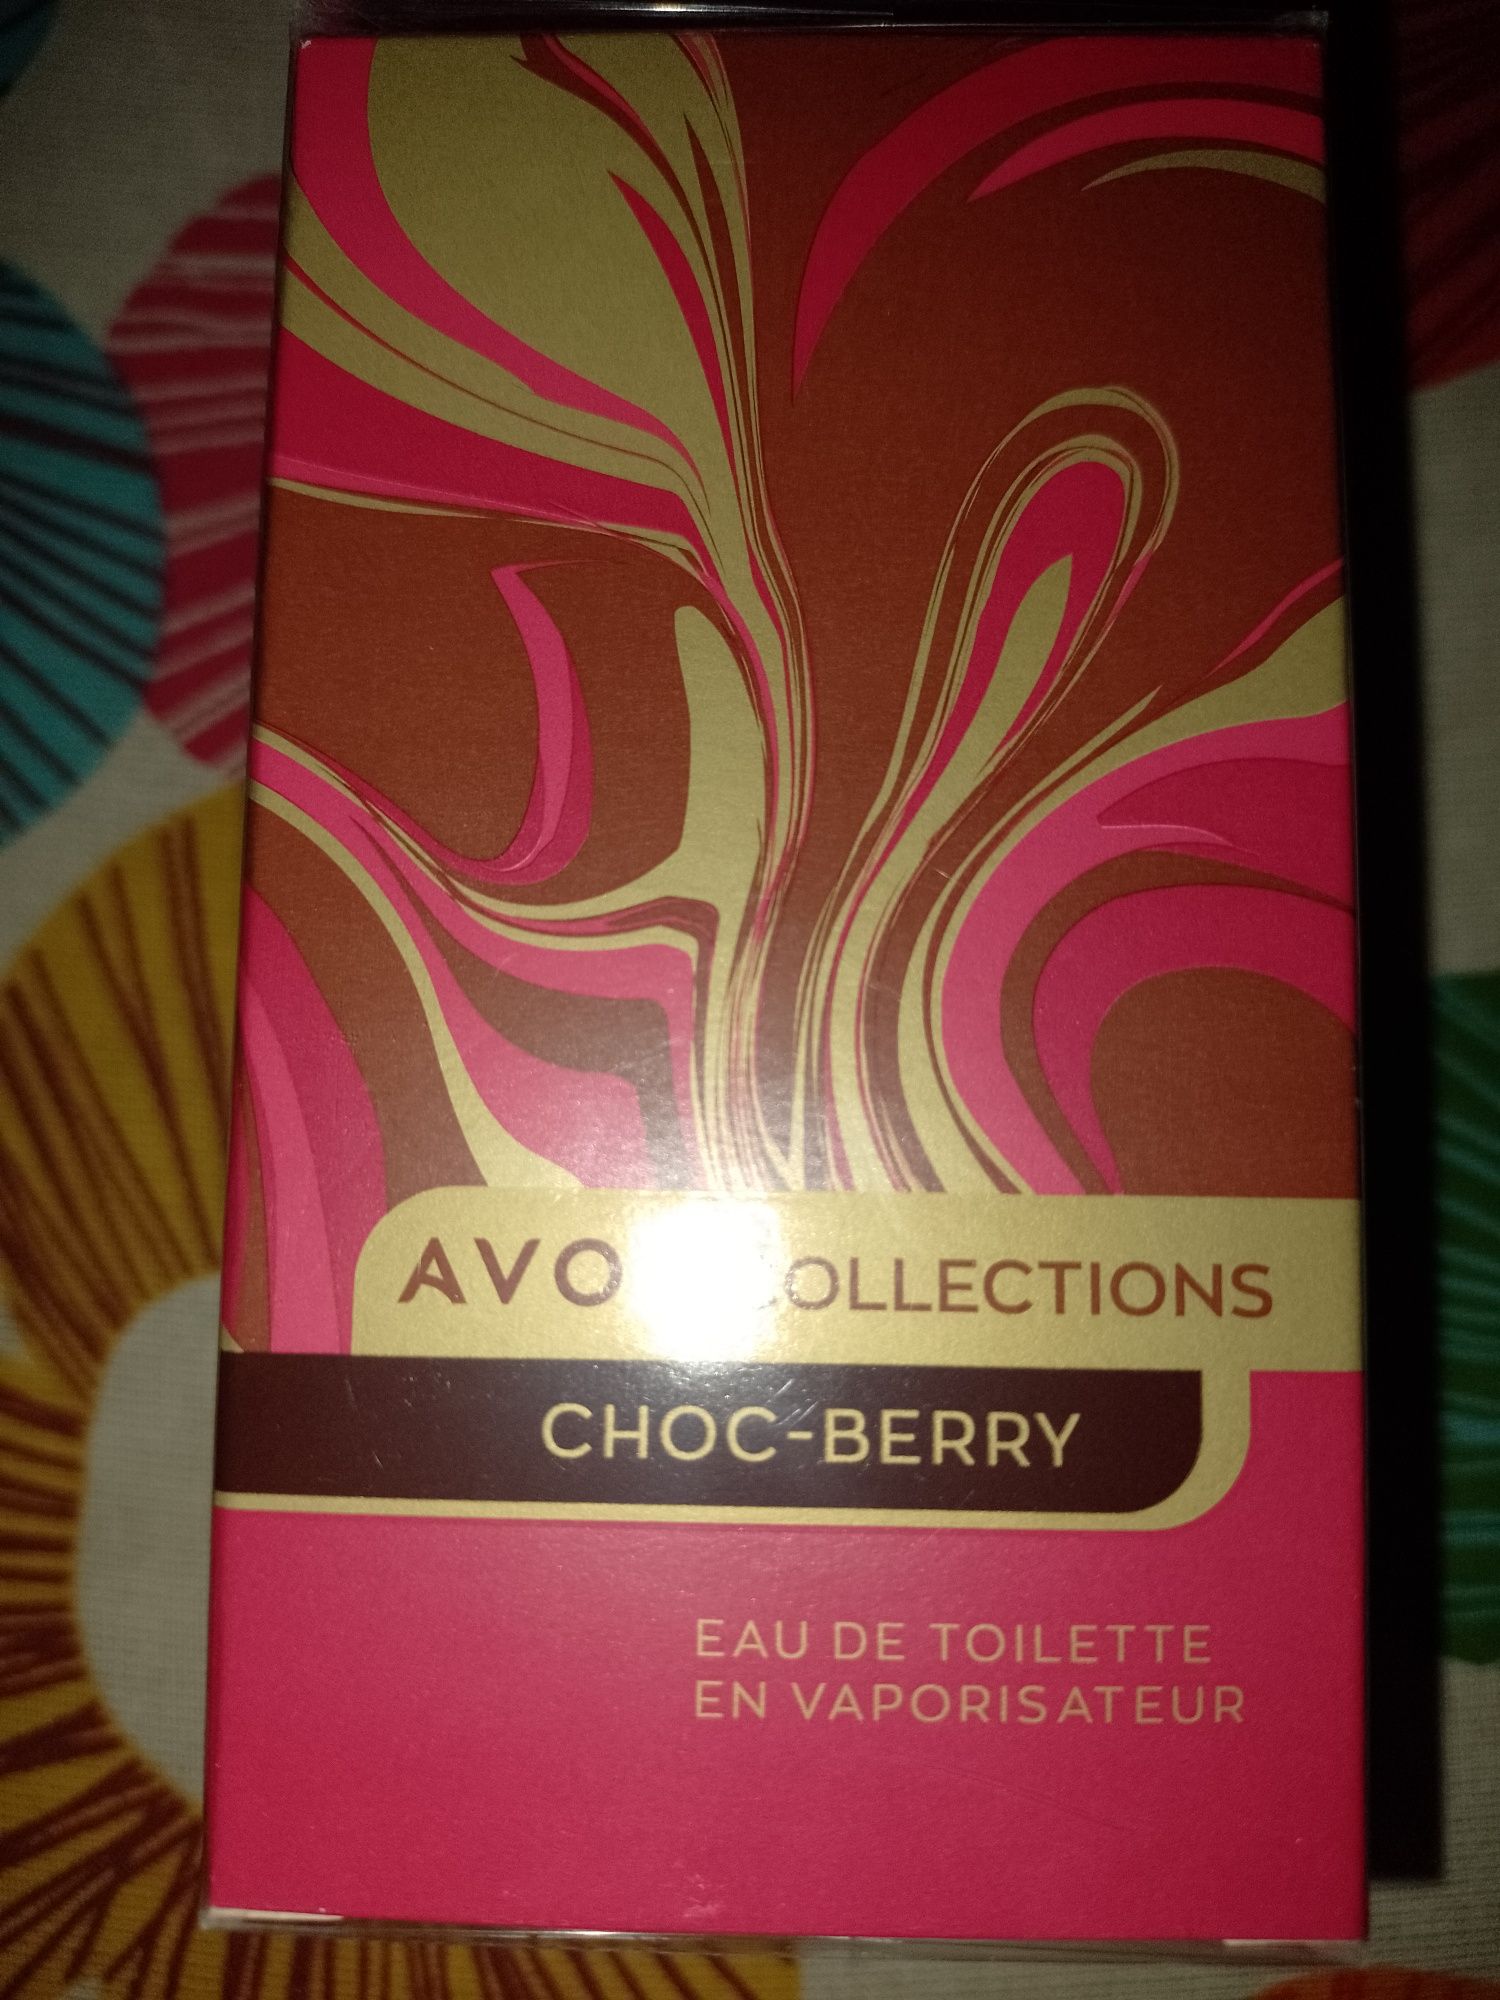 Avon Collections Choc-Berry 50 ml - szczegóły w opisie